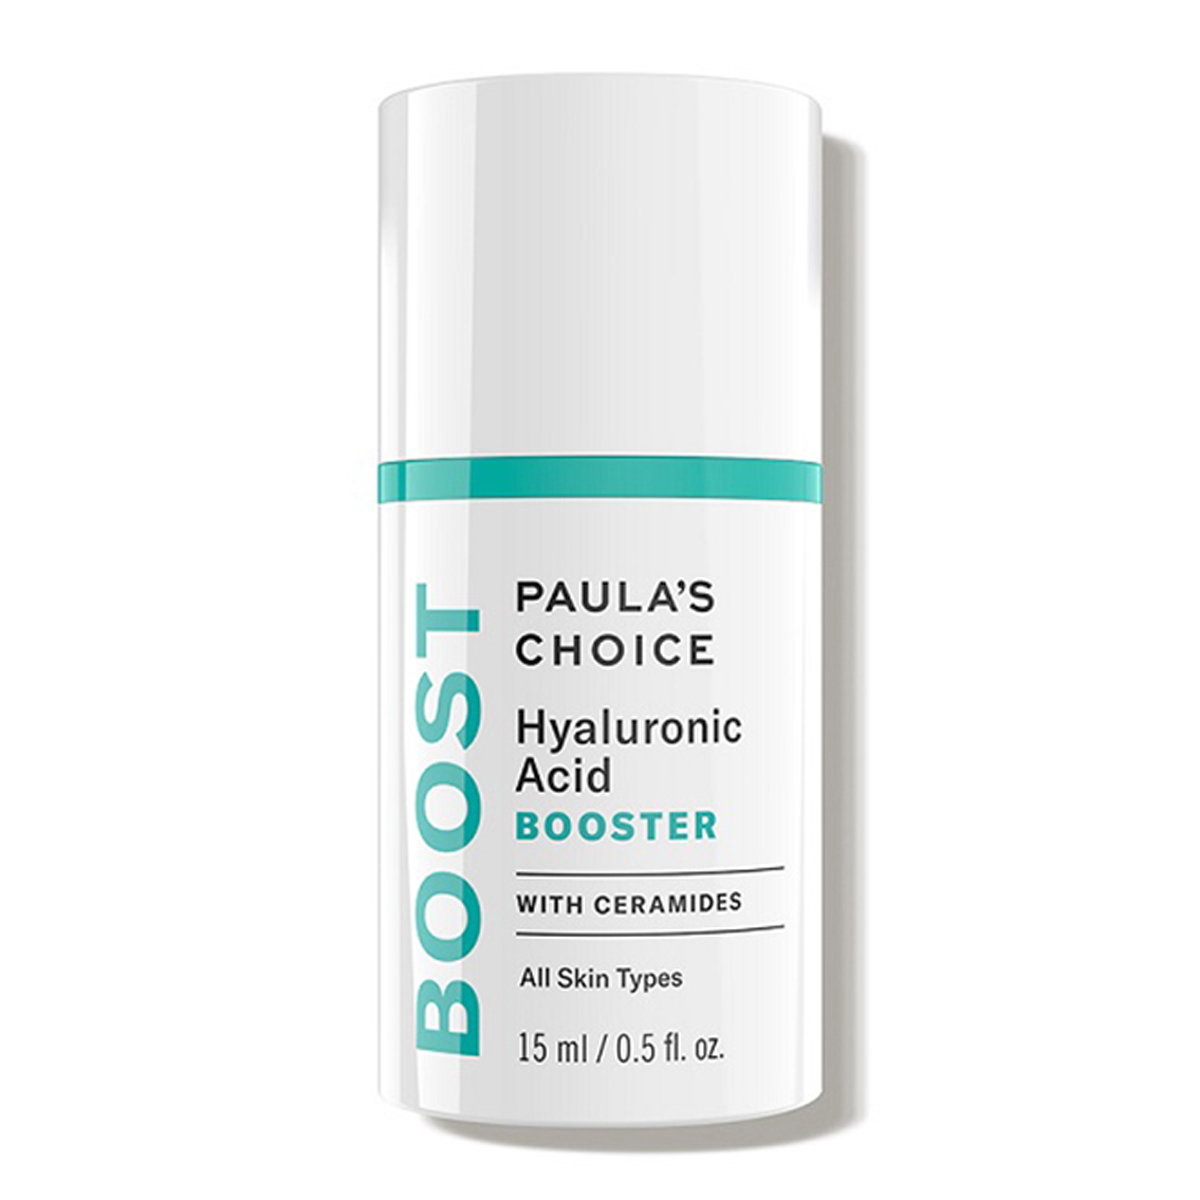 Serum chống lão hóa Paula’s Choice Hyaluronic A xít Booster có giá 1.190.000 VNĐ